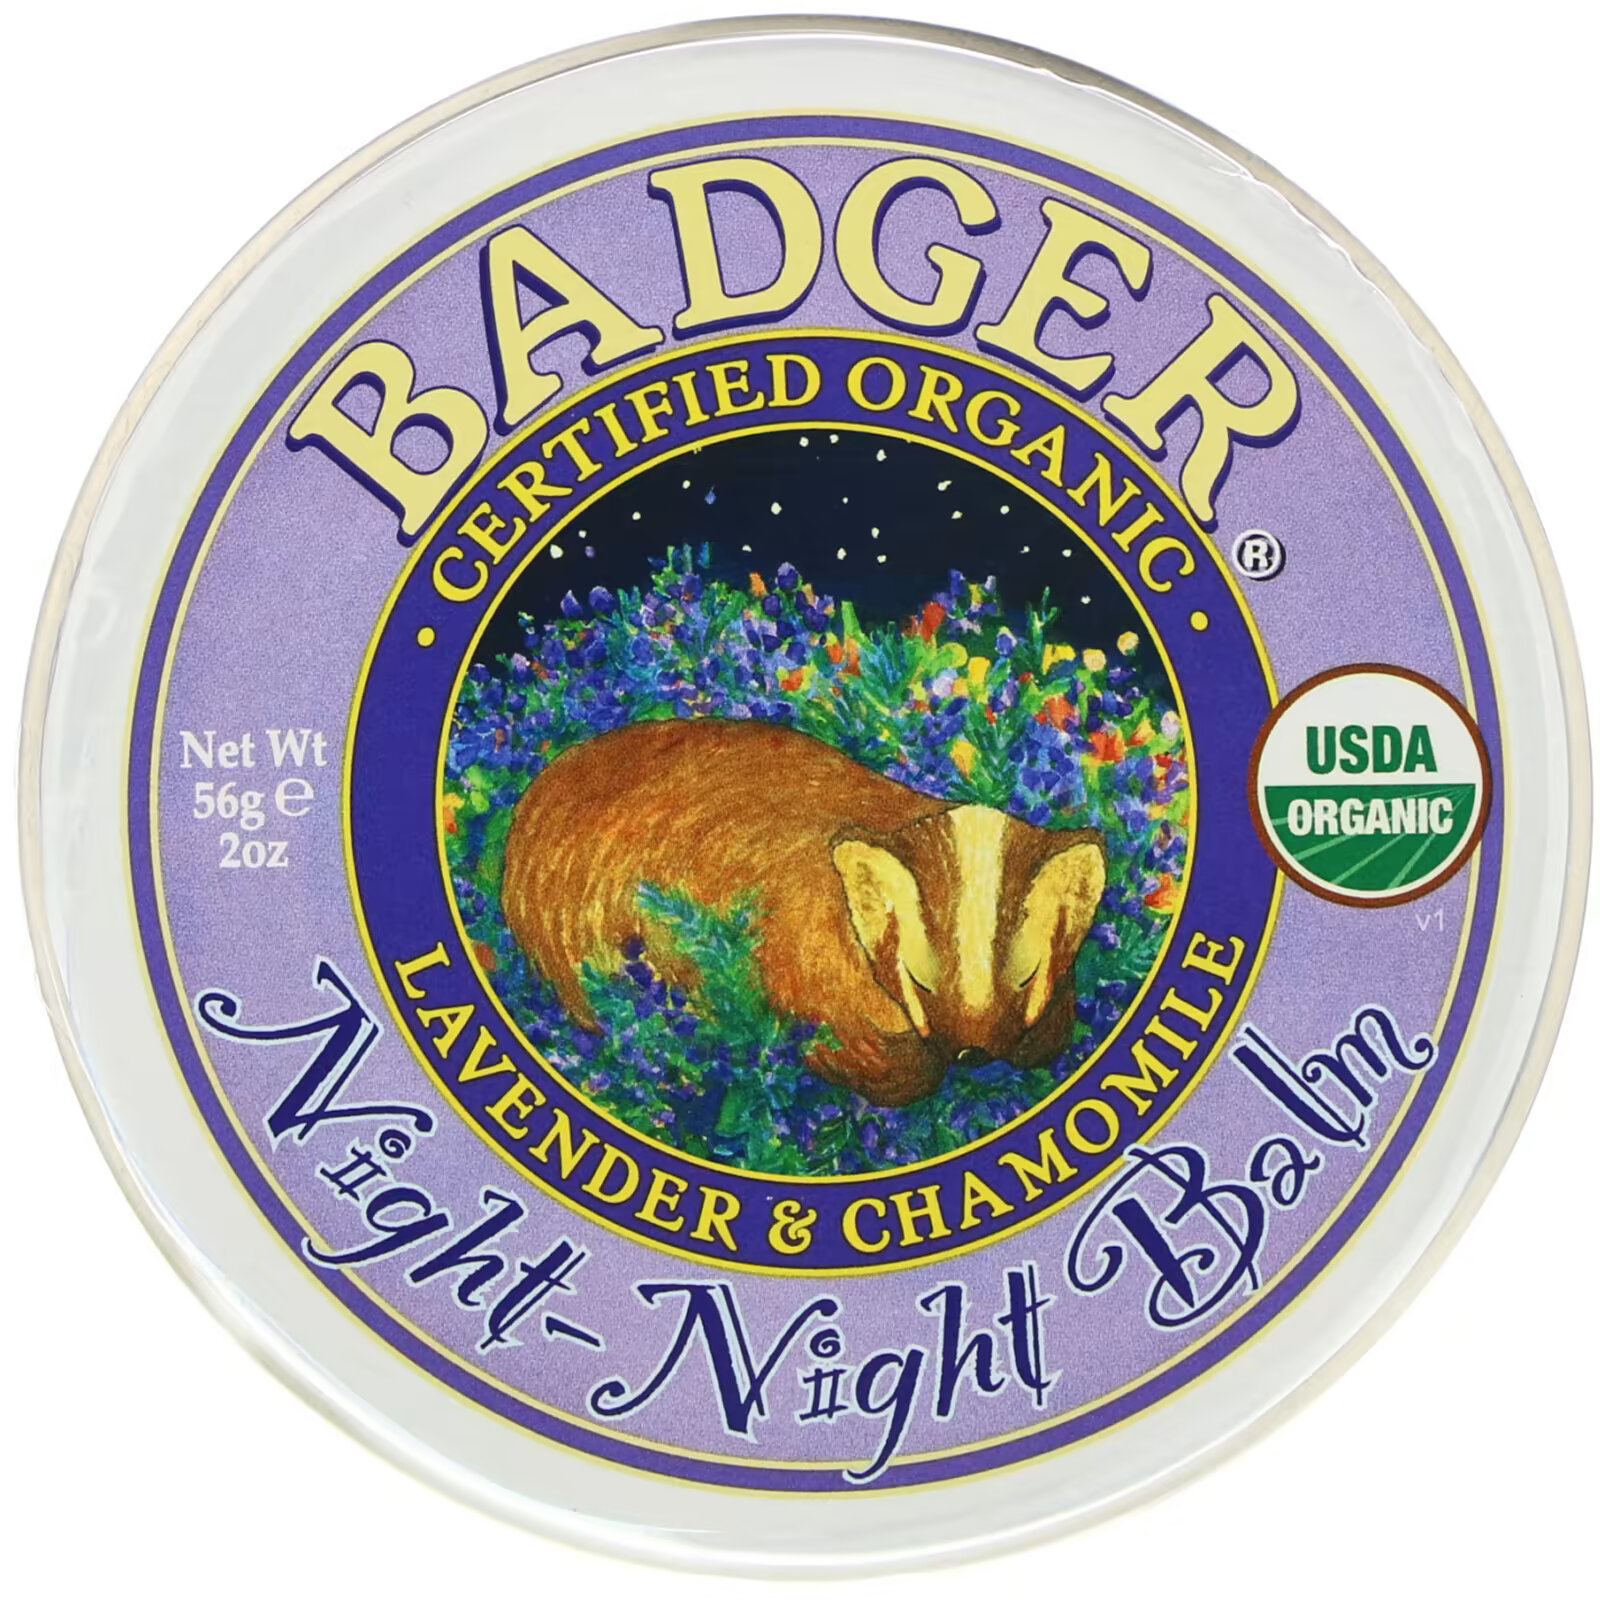 Badger Company, Organic, бальзам ночь-ночь, лаванда и ромашка, 2 унции (56 г) badger company барсучий бальзам для рук 56 г 2 унции